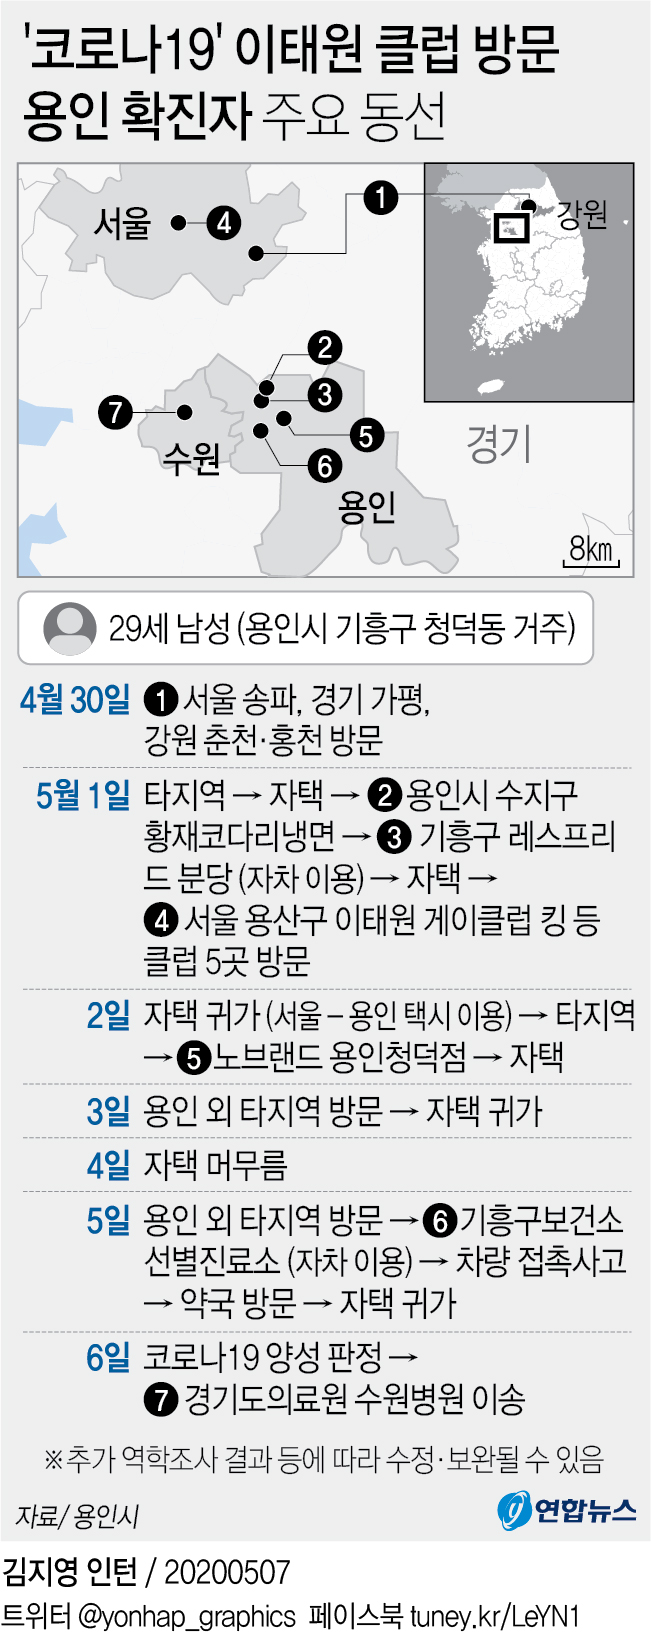 용인 코로나 확진자 주요 동선 / 연합뉴스